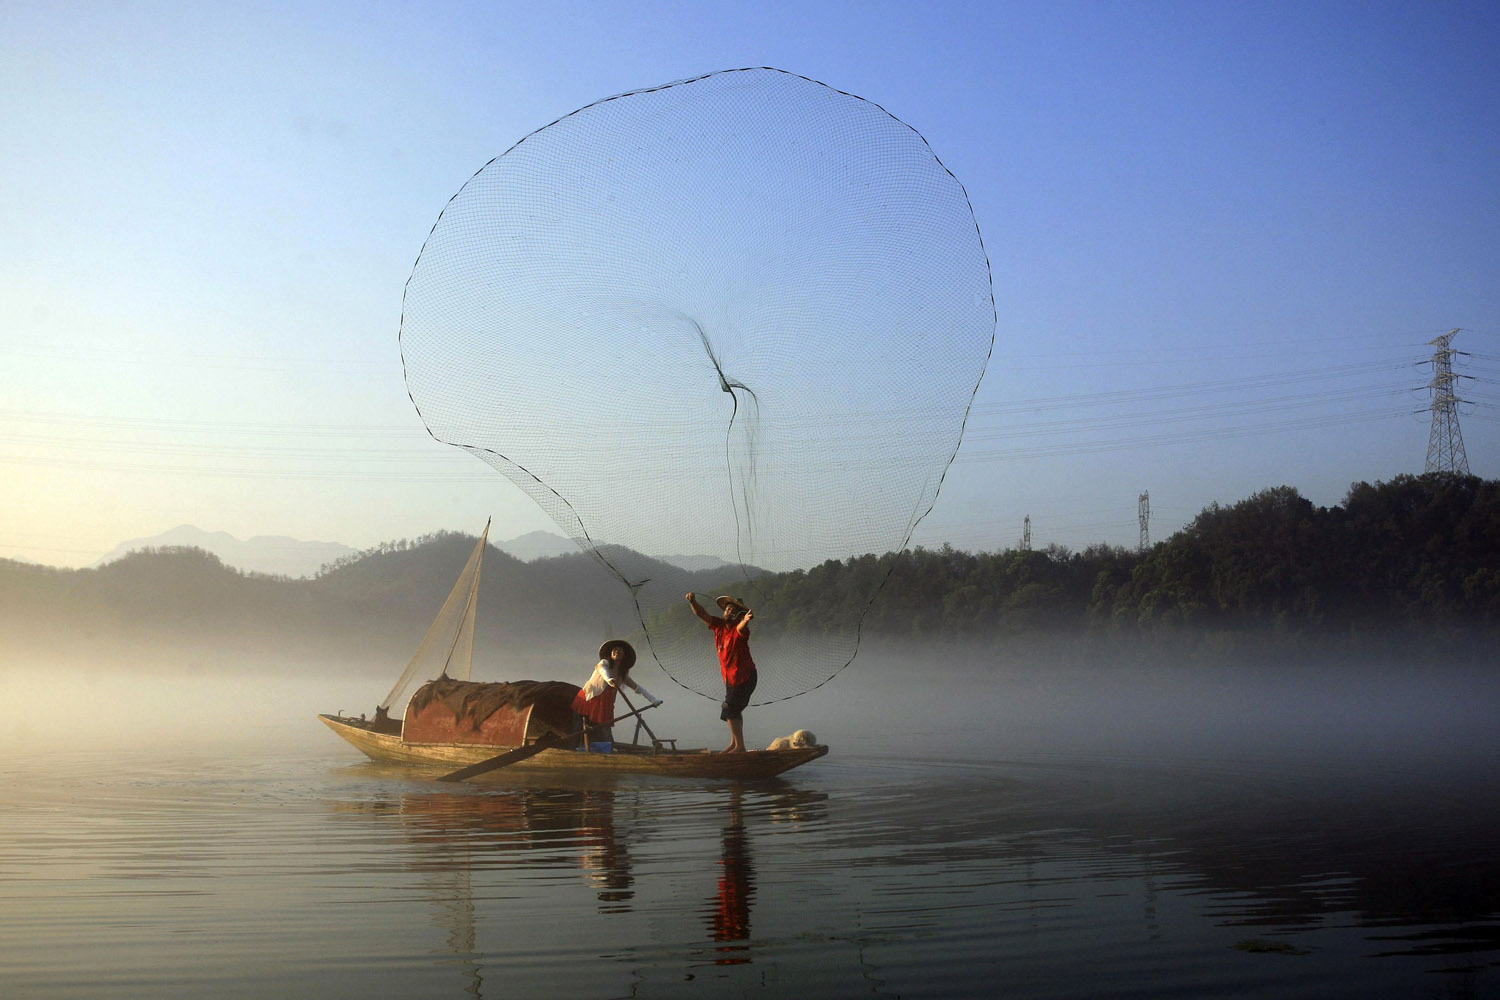 July 30, 2013. A fisherman casts his net to catch fish on Xin'an River in Jiande, Zhejiang province.